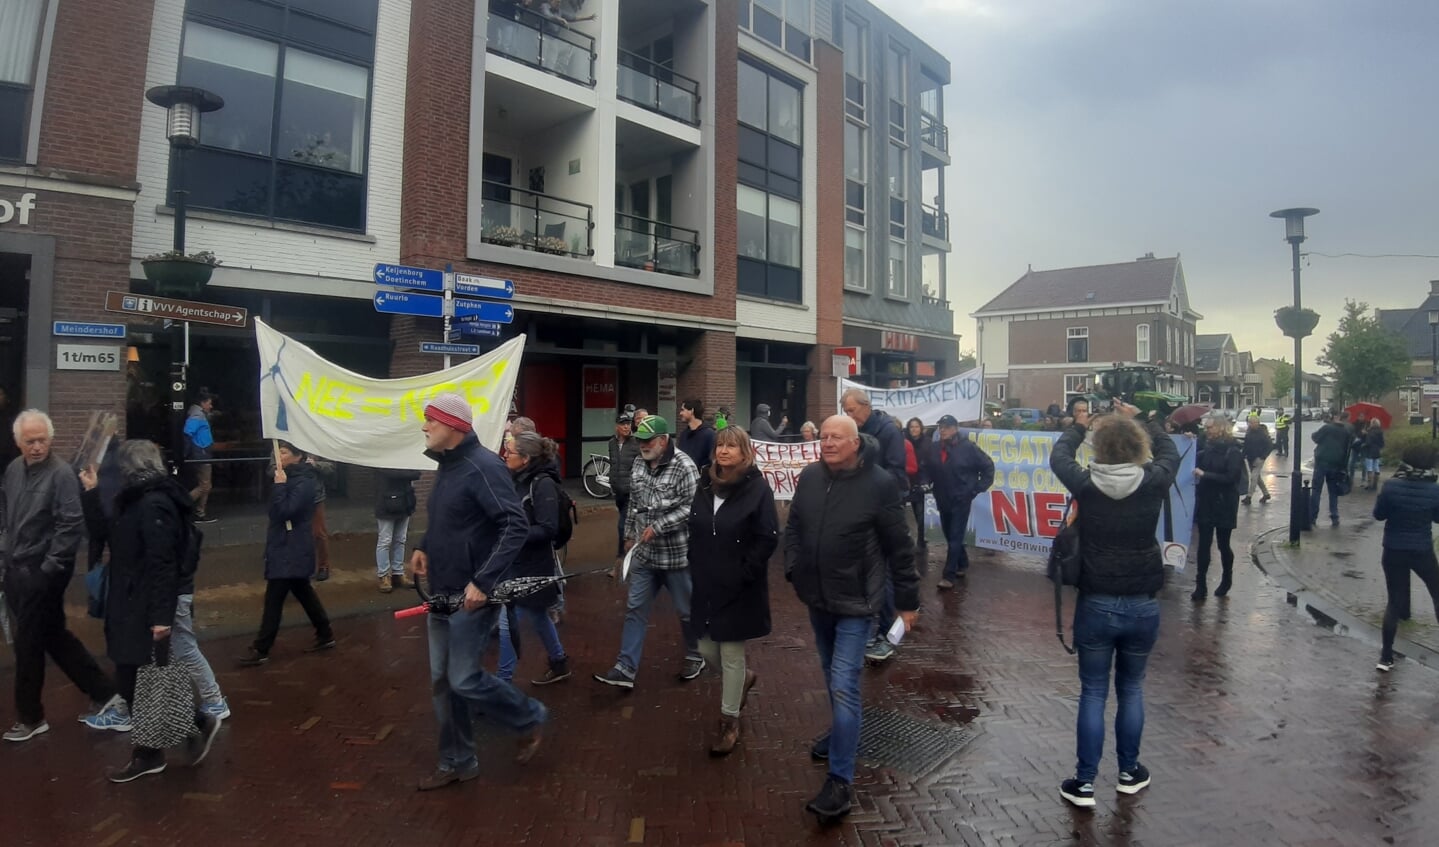 Enkele honderden mensen namen deel aan de stille tocht naar het gemeentehuis; een protestmars tegen windturbines in Bronckhorst. Foto's: Rudi Hofman